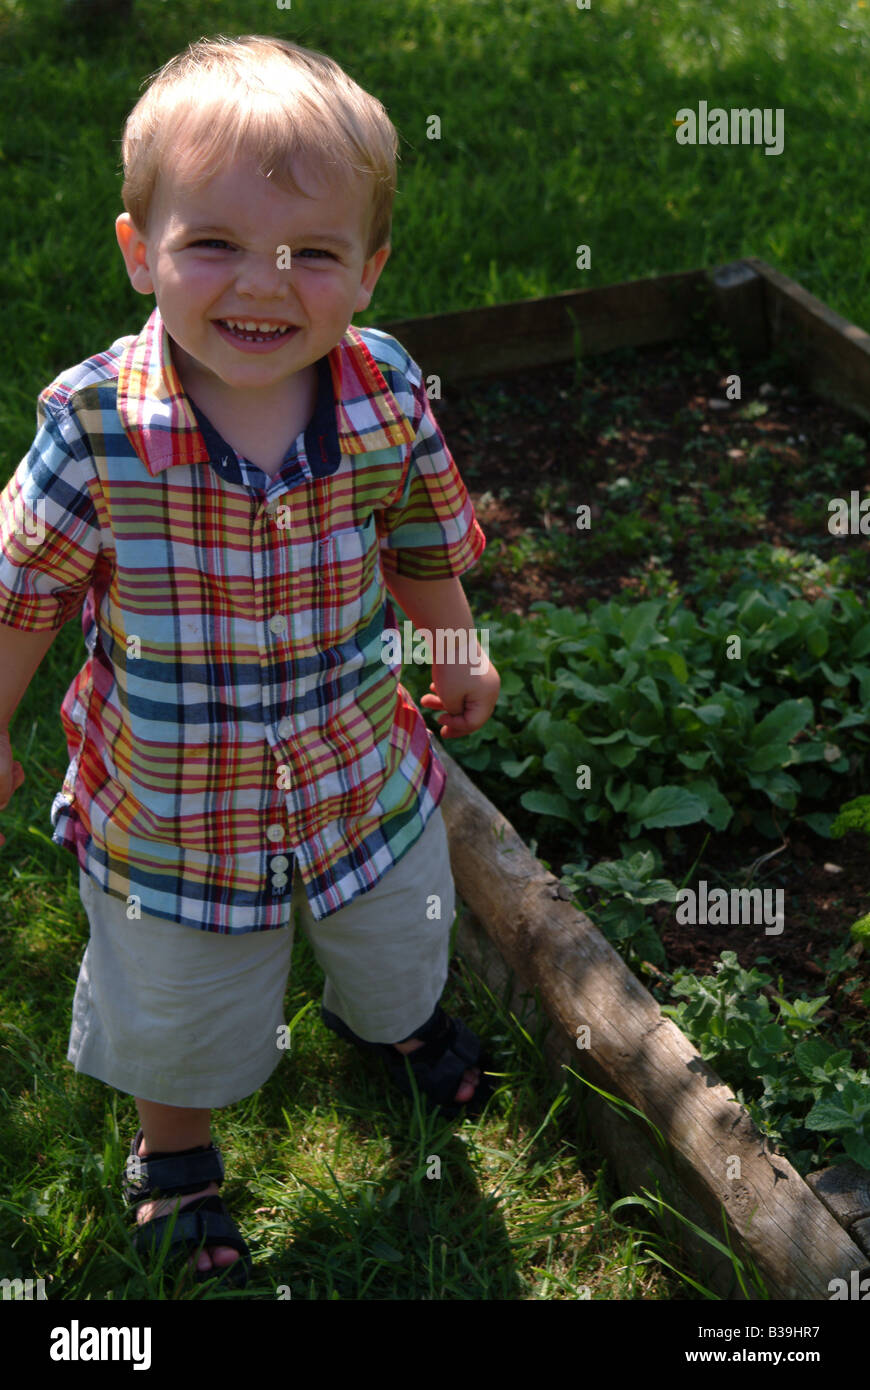 Petit garçon debout dans un jardin à côté d'une parcelle de terrain végétale Banque D'Images